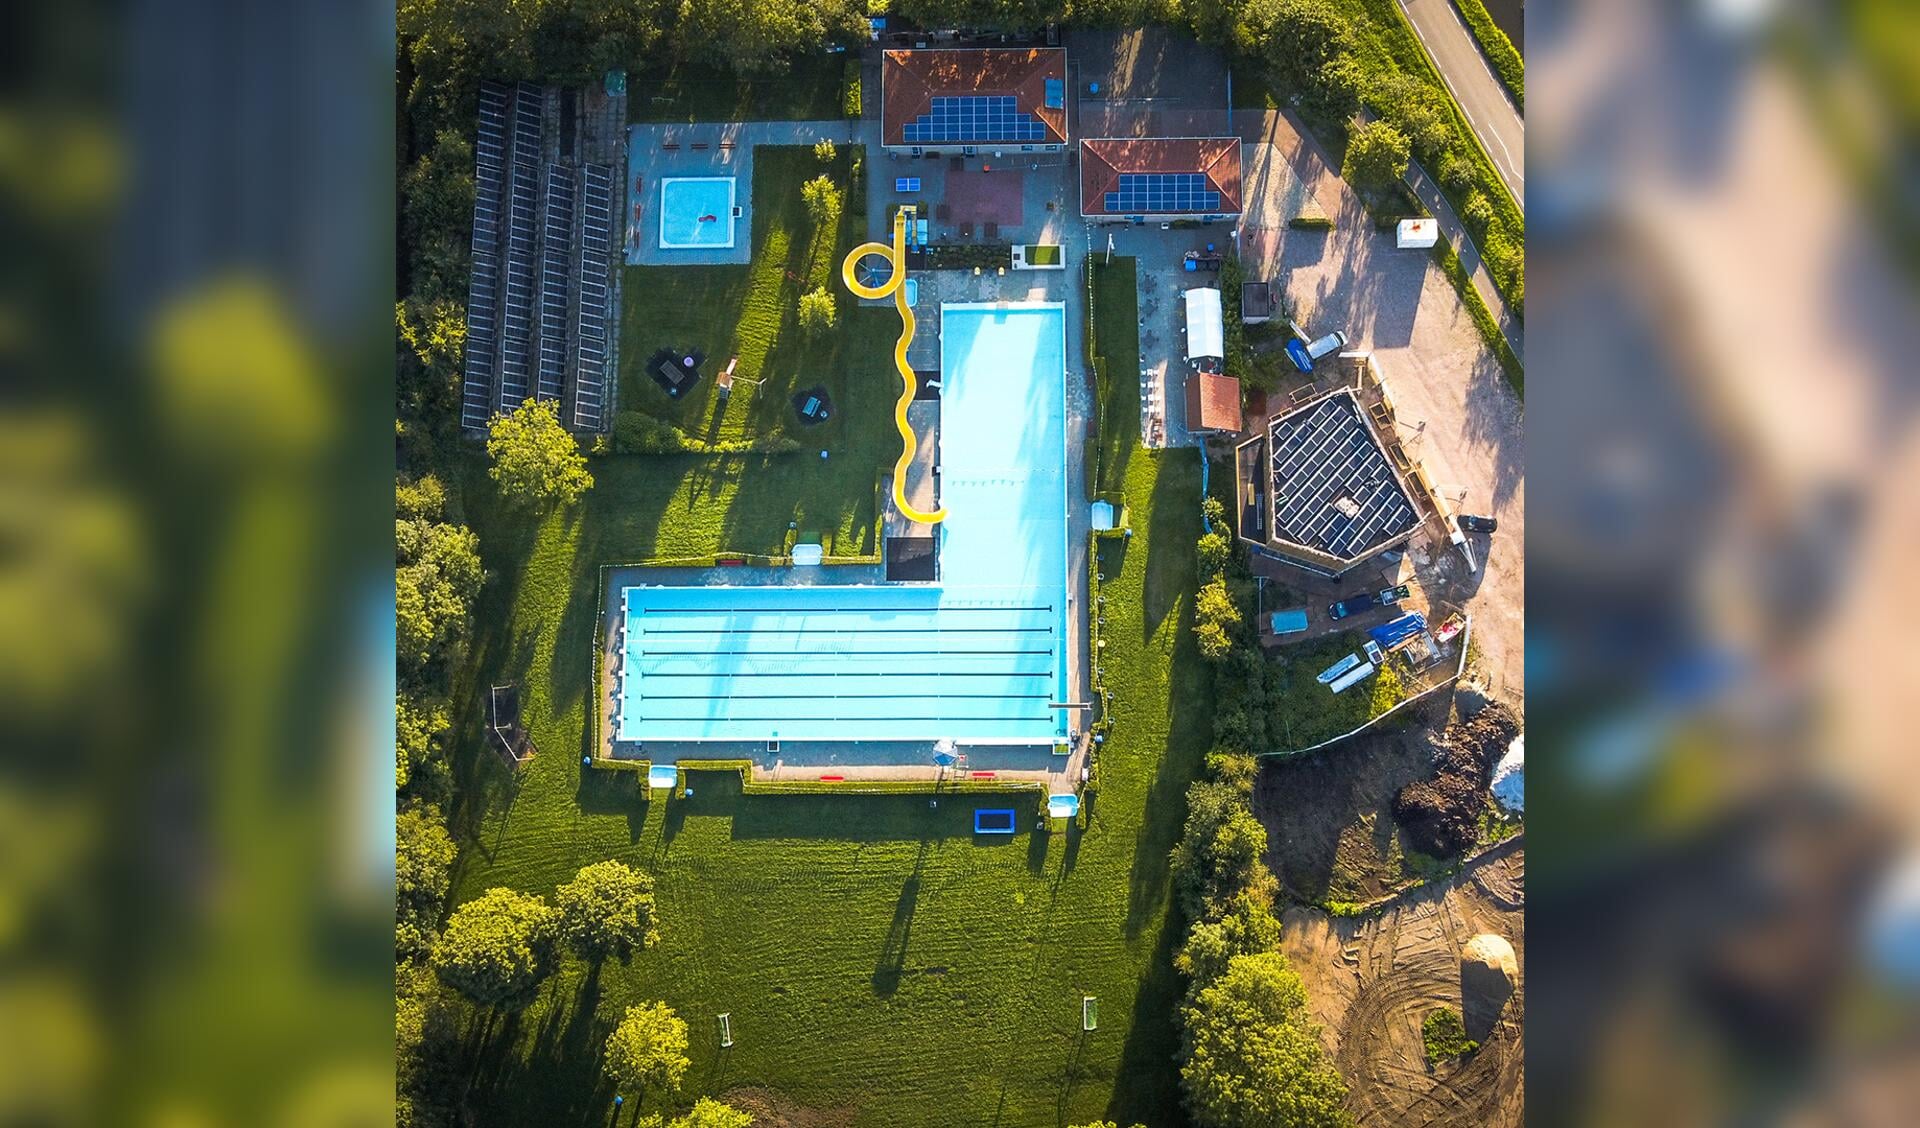 • Zwembad De Doetse Kom in Giessenburg.